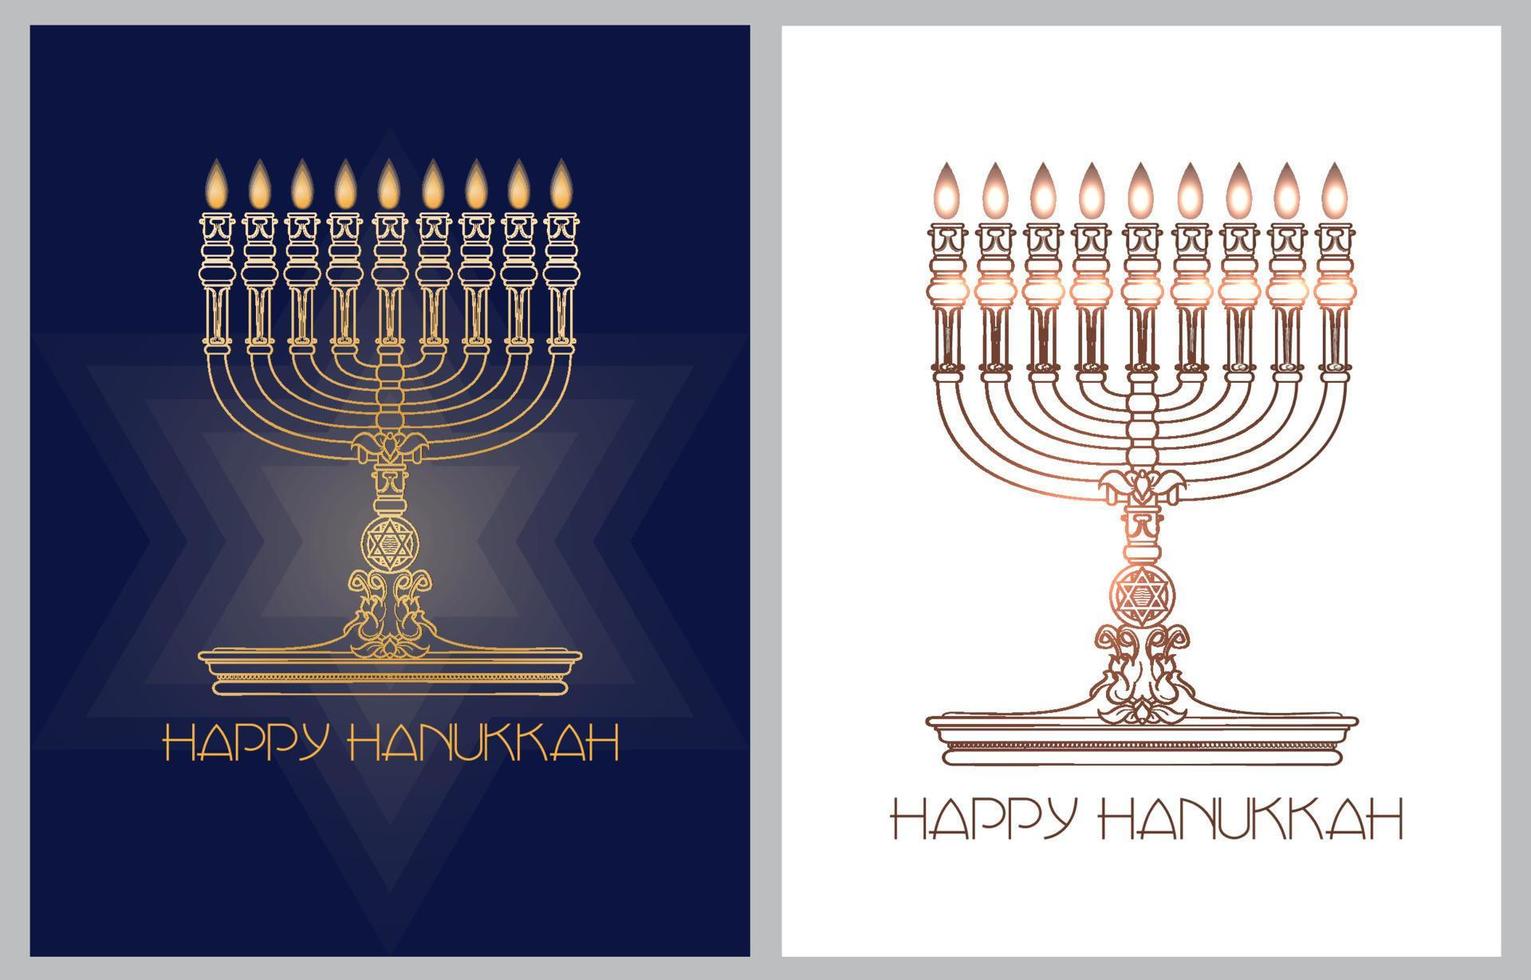 Happy Hanukkah. Jewish holiday. Menorah and candles. Vector banner template.